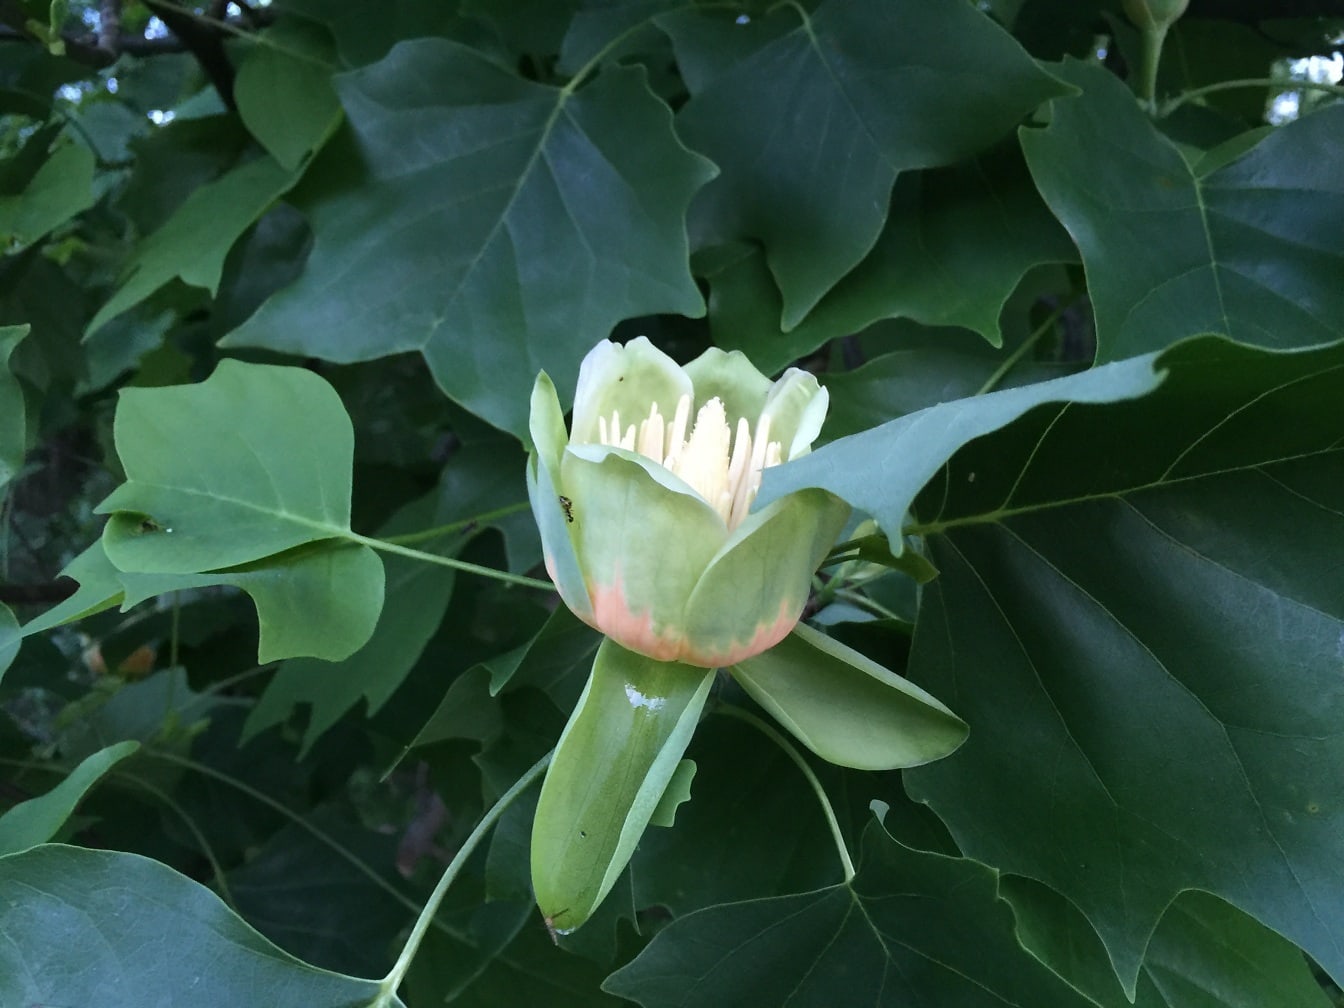 ต้นทิวลิป – ดอกป็อปลาร์สีเหลืองทิวลิป (Liriodendron tulipifera) บานระยะใกล้